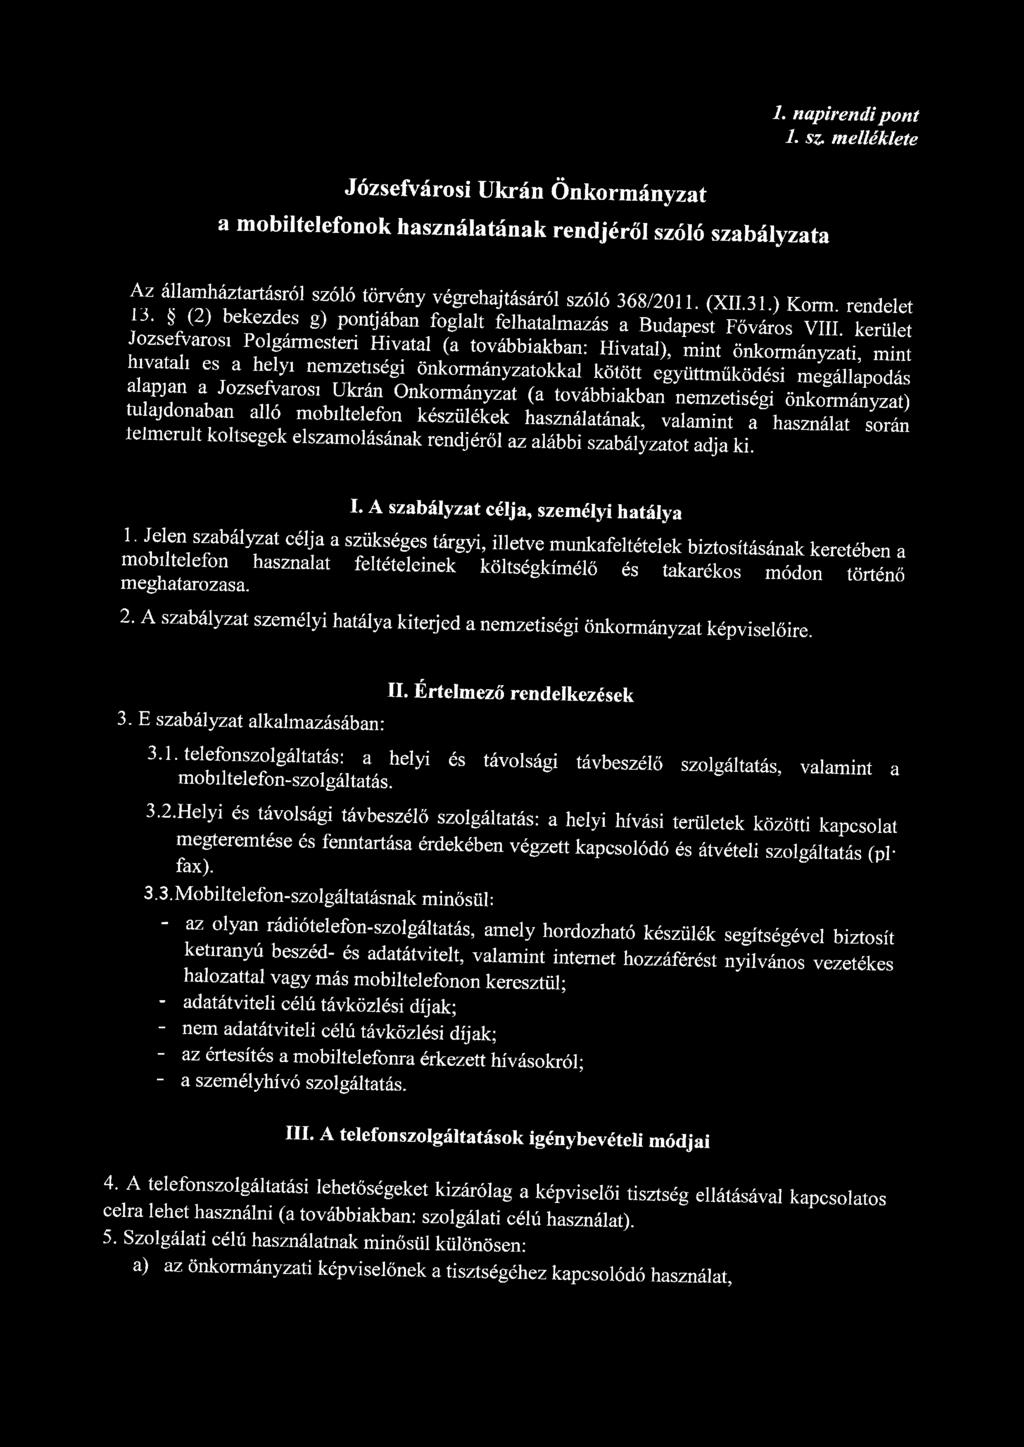 Józsefvárosi Ukrán Önkormányzat a mobiltelefonok használatának rendjéről szóló szabályzata 1. napirendi pont 1. sz. melléklete Az államháztartásról szóló törvény végrehajtásáról szóló 368/2011. (XII.